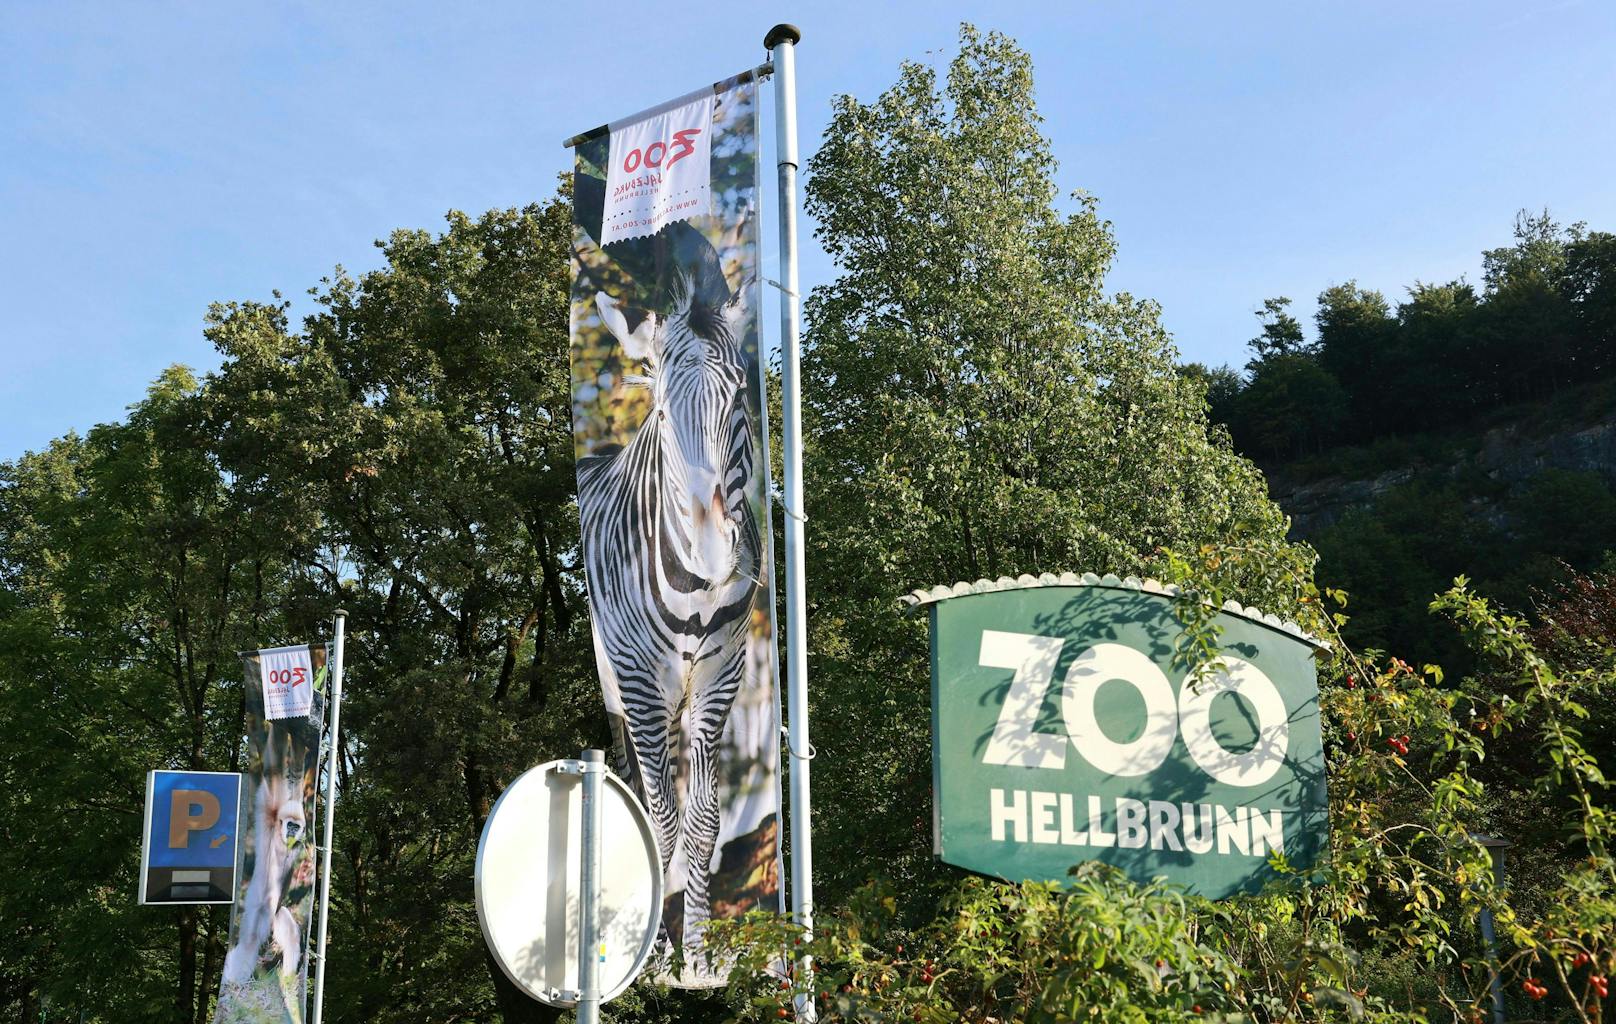 Im Salzburger Zoo Hellbrunn wurden am Dienstag <a href="https://www.heute.at/s/grosseinsatz-toter-in-nashorn-gehege-im-zoo-salzburg-100291088">ein Toter und ein Schwerverletzter</a> entdeckt. Die Polizei steht im Großeinsatz – <em>"Heute"</em> berichtete. Mittlerweile ist klar, um wen es sich bei den beiden Personen handelt! Nach <em>Heute"</em>-Informationen handelt es sich bei der toten Person um eine Tierpflegerin.